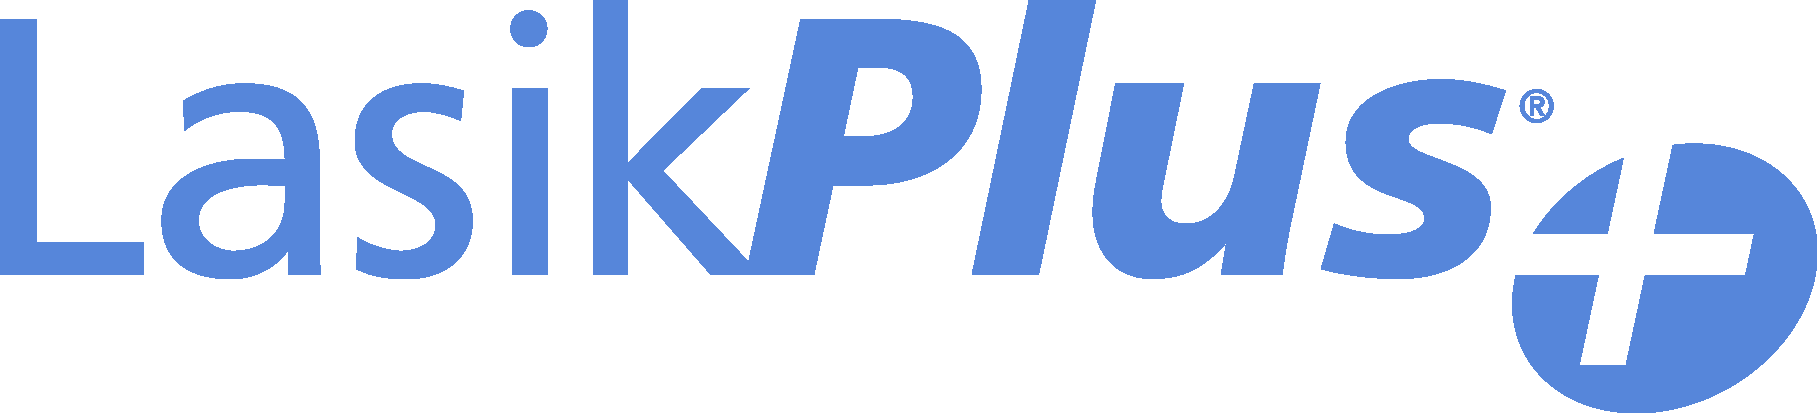 lasikplus-logo.png